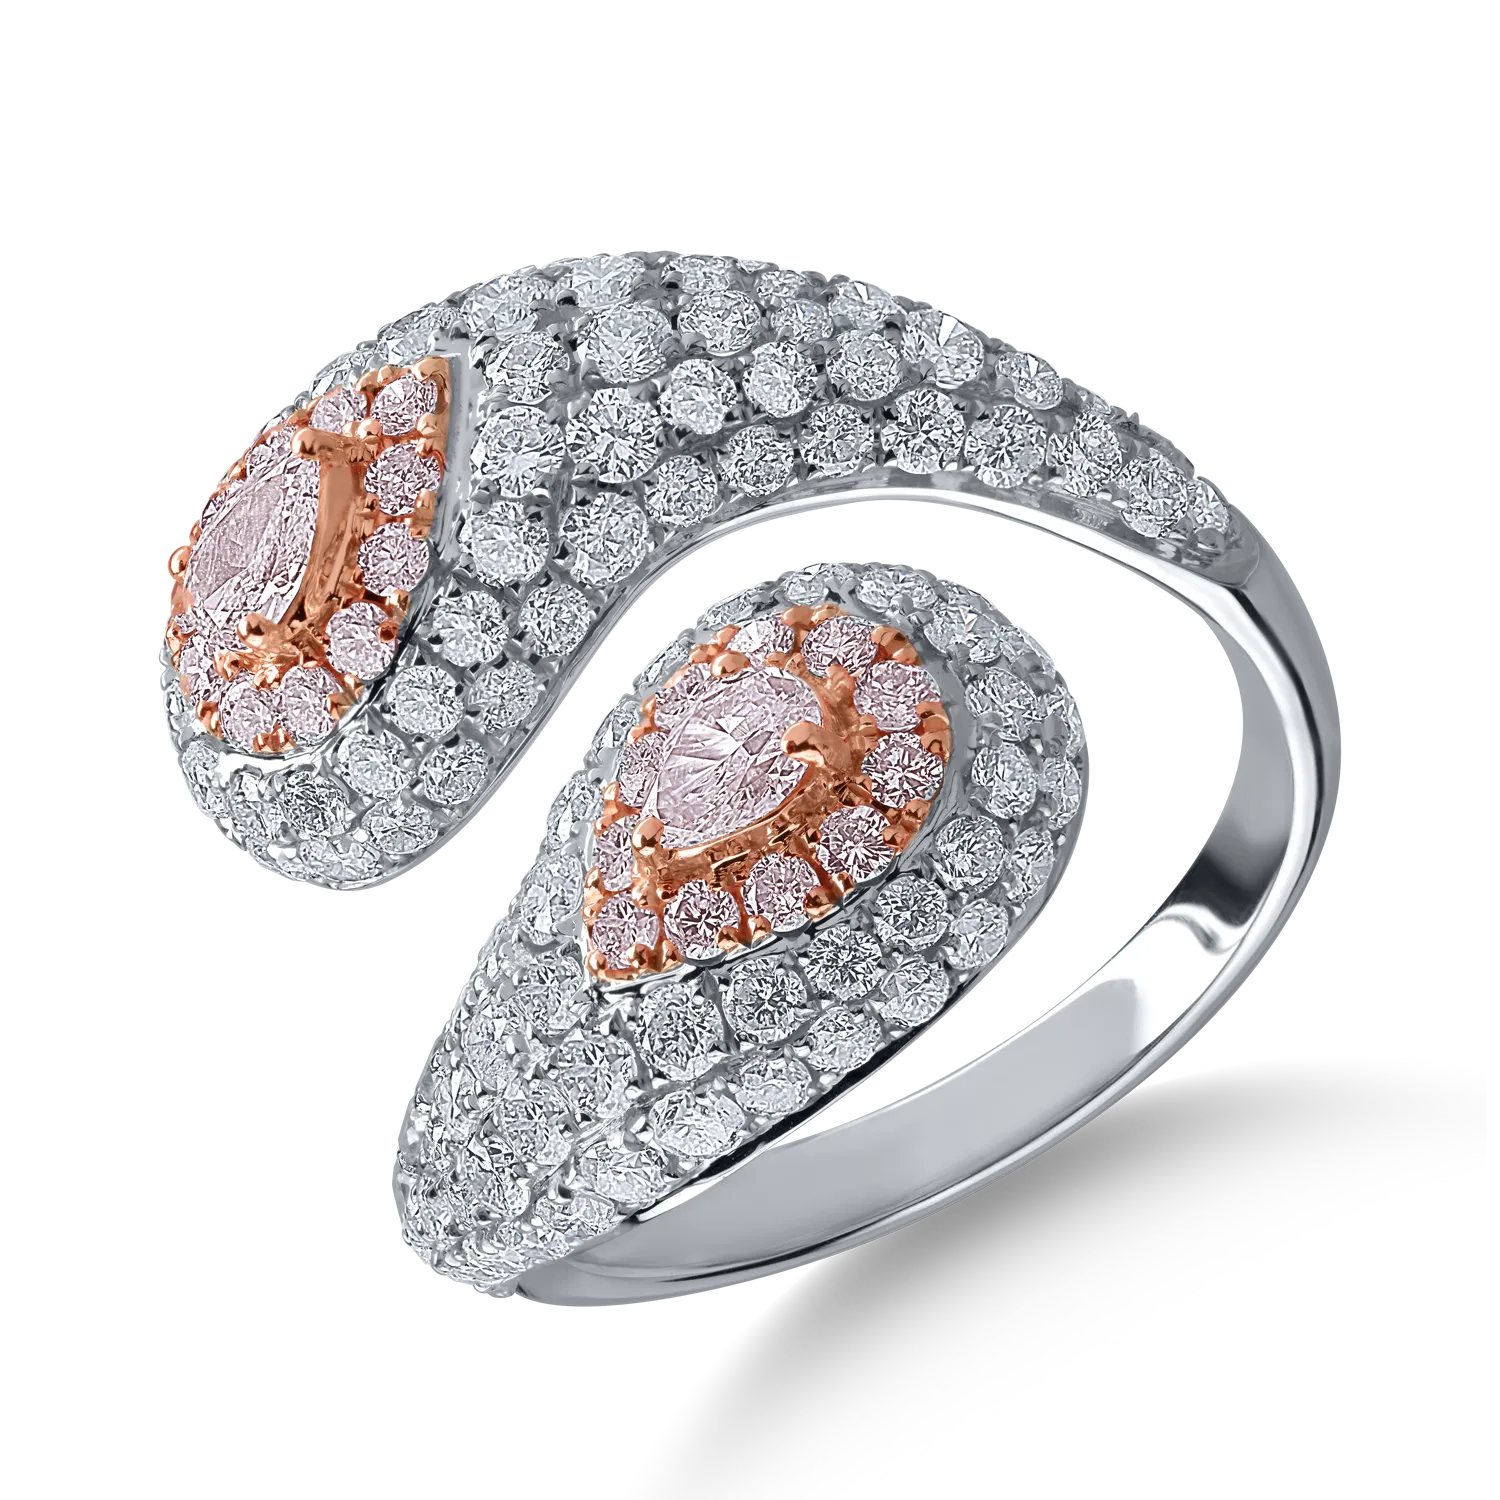 Inel din aur alb-roz cu diamante transparente de 2.09ct si diamante roz de 0.59ct